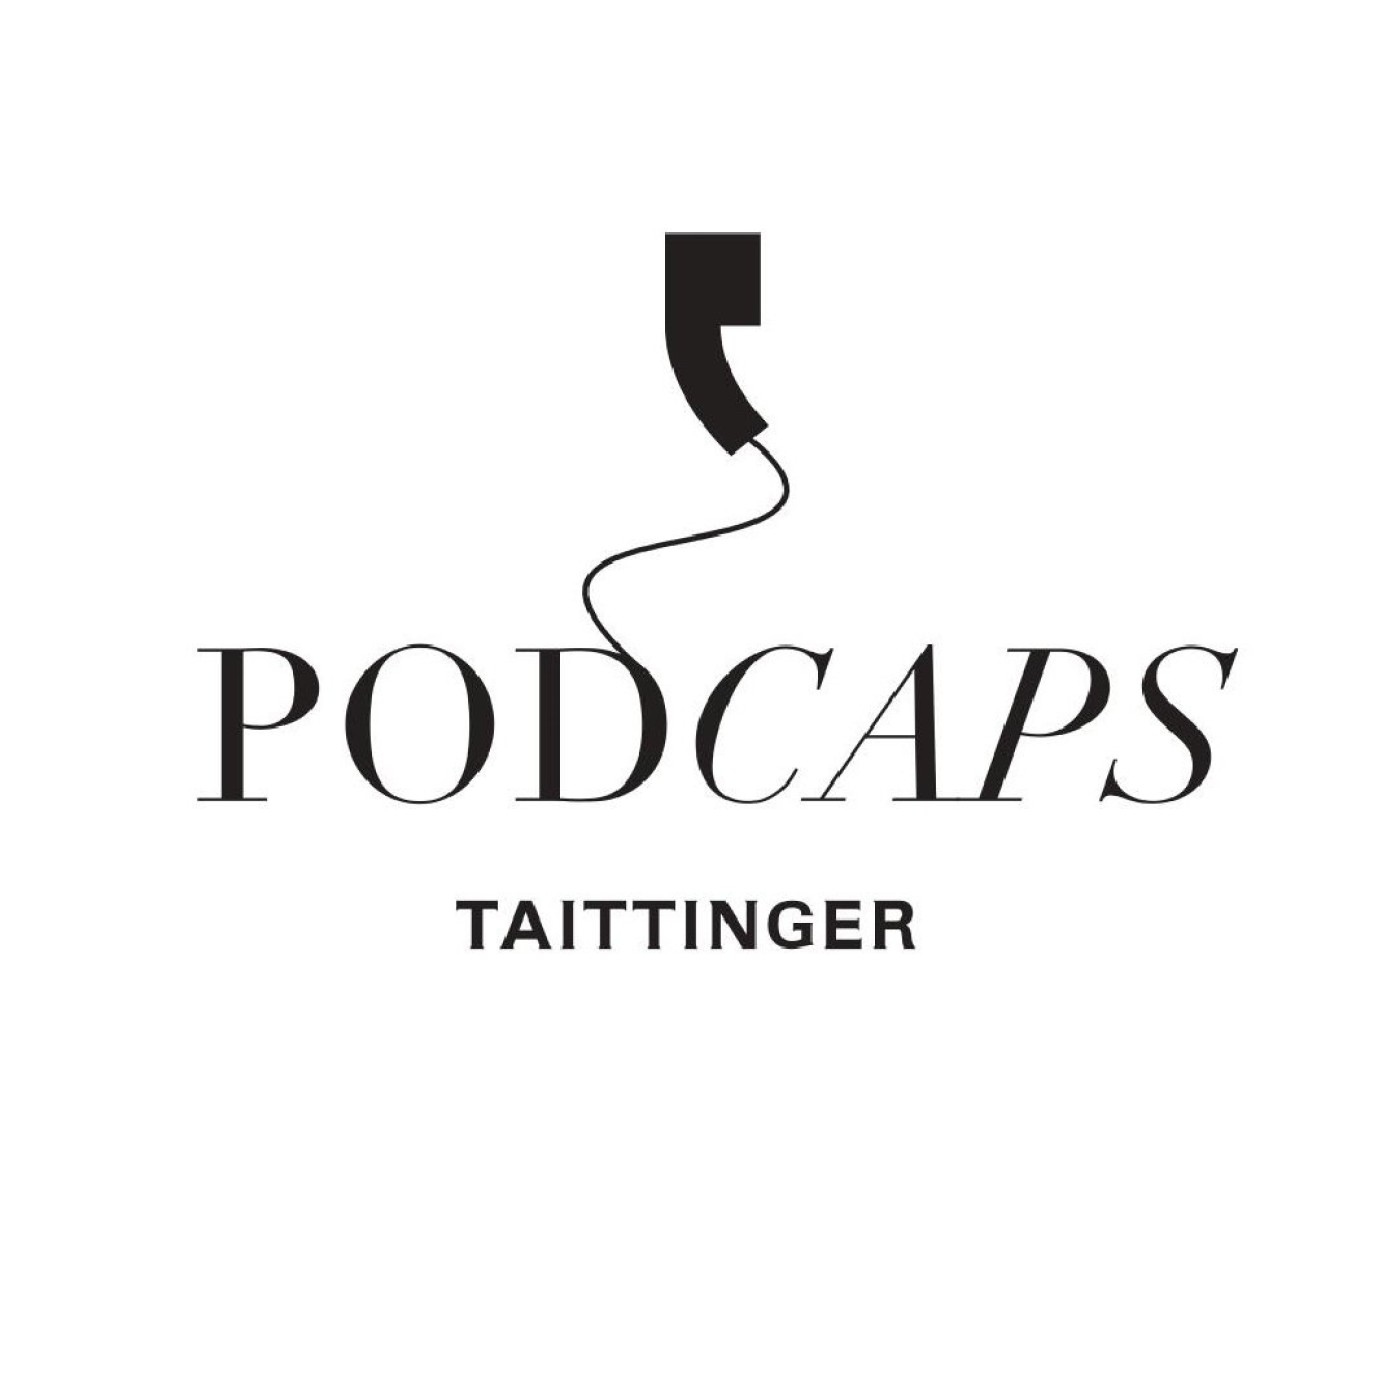 Podcaps Taittinger : Damien le Sueur, Managing Director at Taittinger